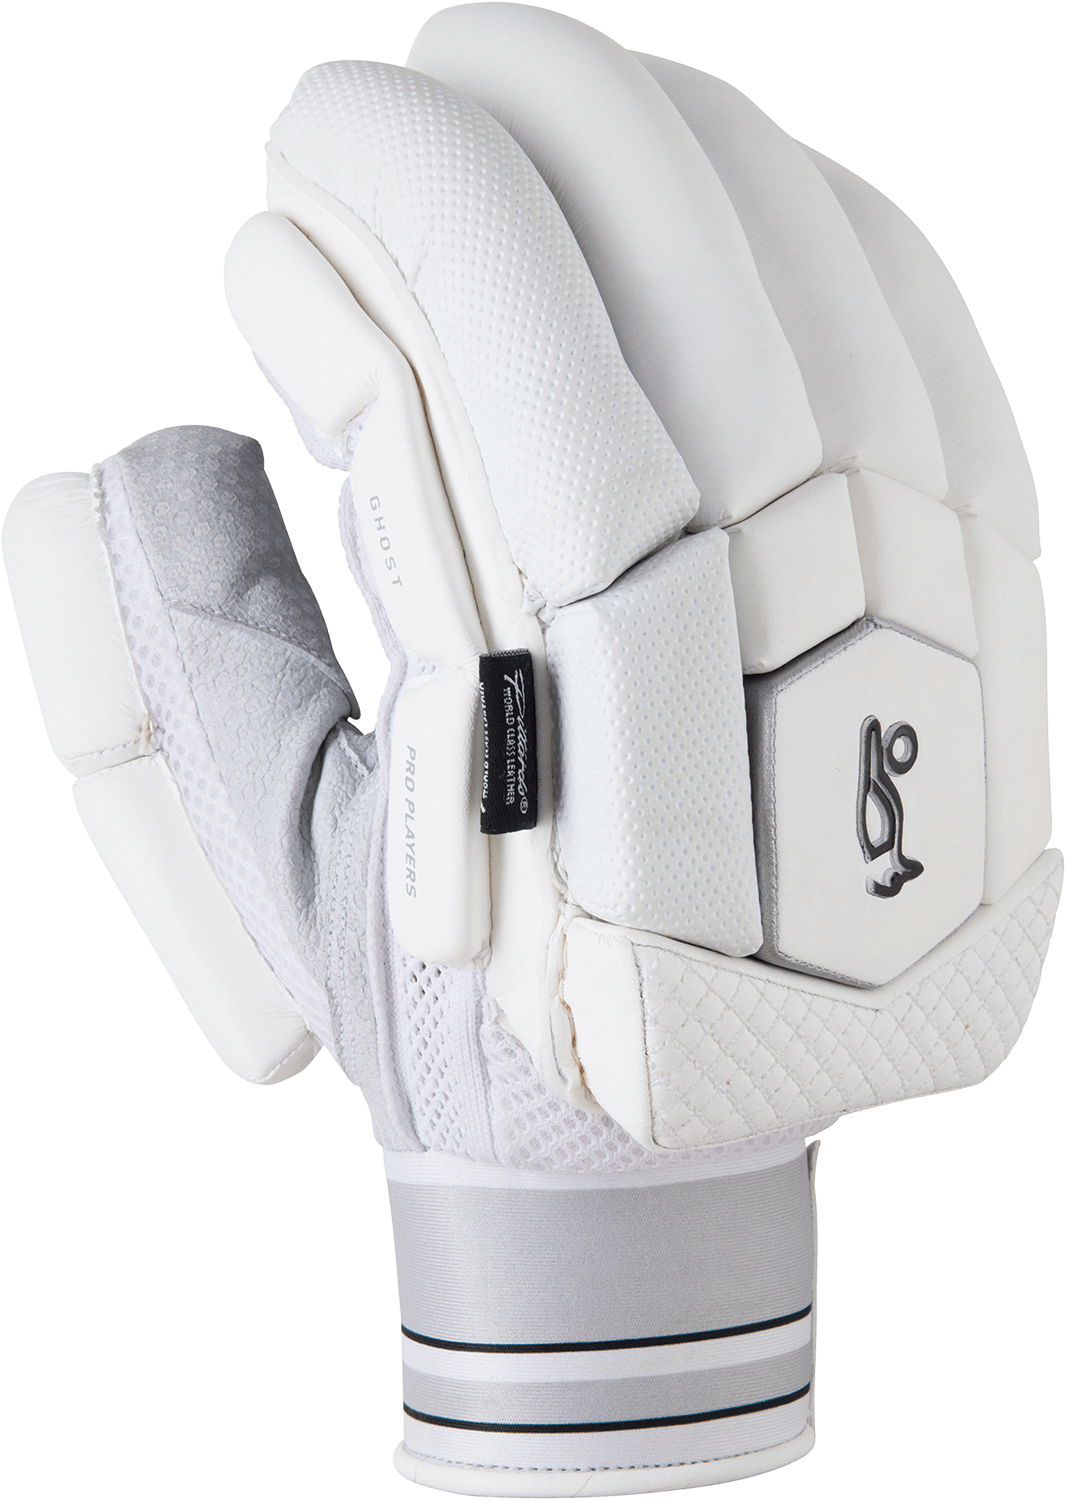 Kookaburra Cricket Batting Kookaburra Ghost Pro Players Cricket Batting Gloves 2022